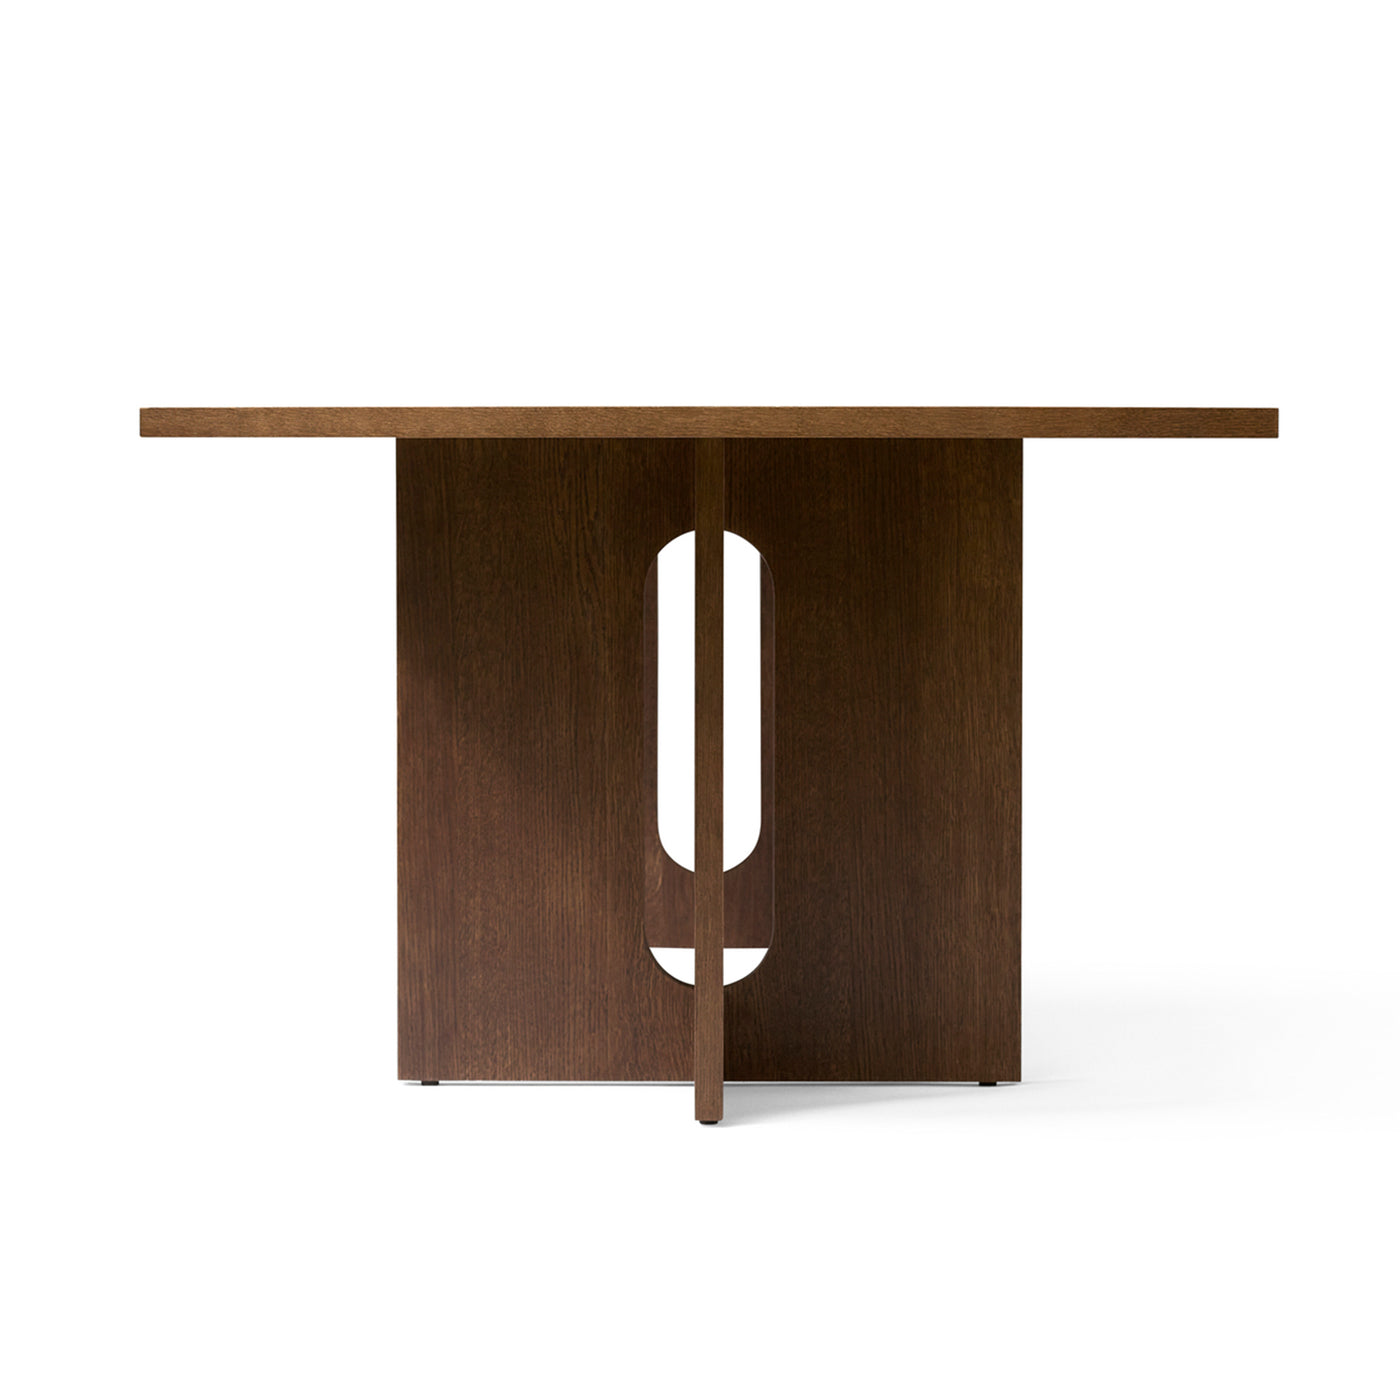 designový jídelní stůl, dřevěný jídelní stůl od Menu space, Androgyne dinning table, Menu, kvalitní nábytek do jídelny